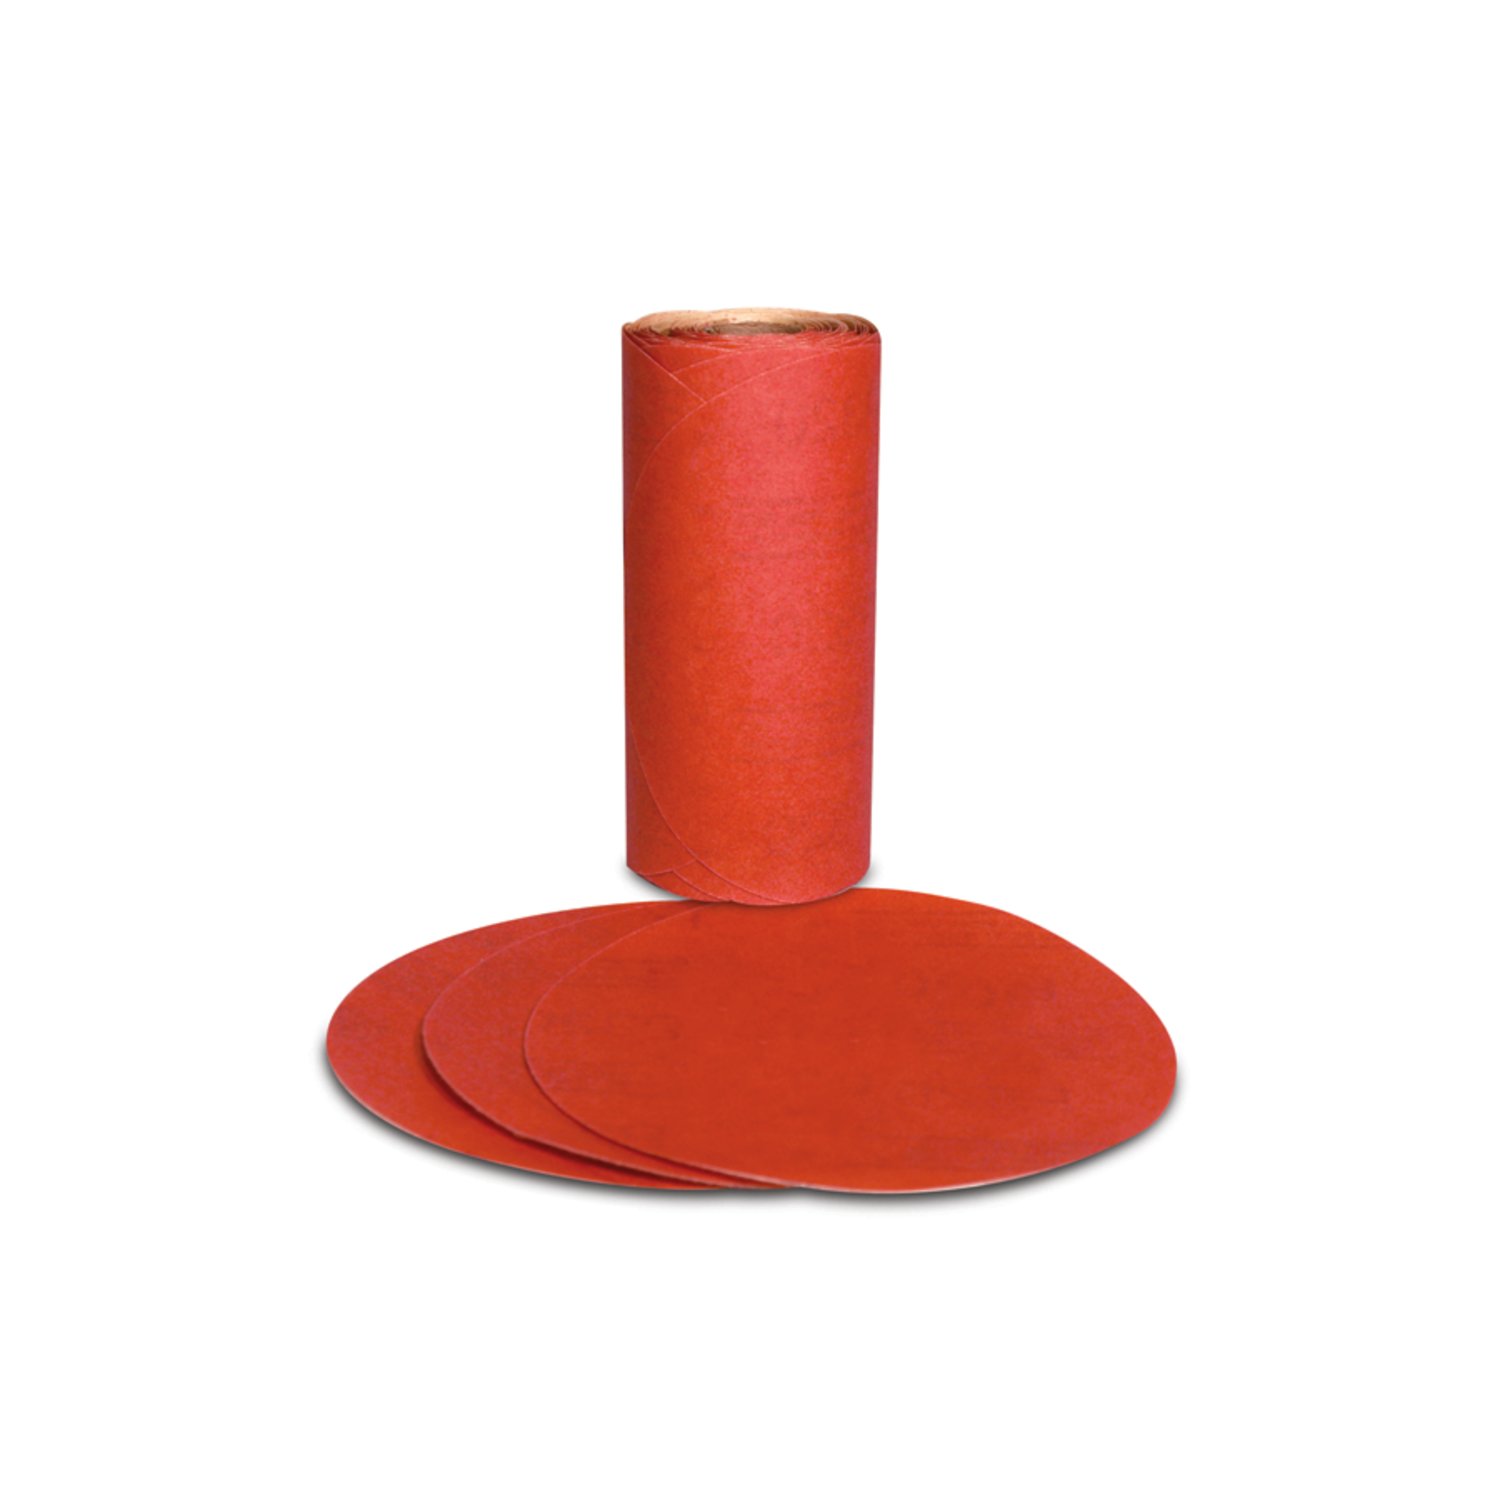 7000119911 - 3M Red Abrasive PSA Disc, 01603, 5 in, P320, 100 discs per roll, 6
rolls per case